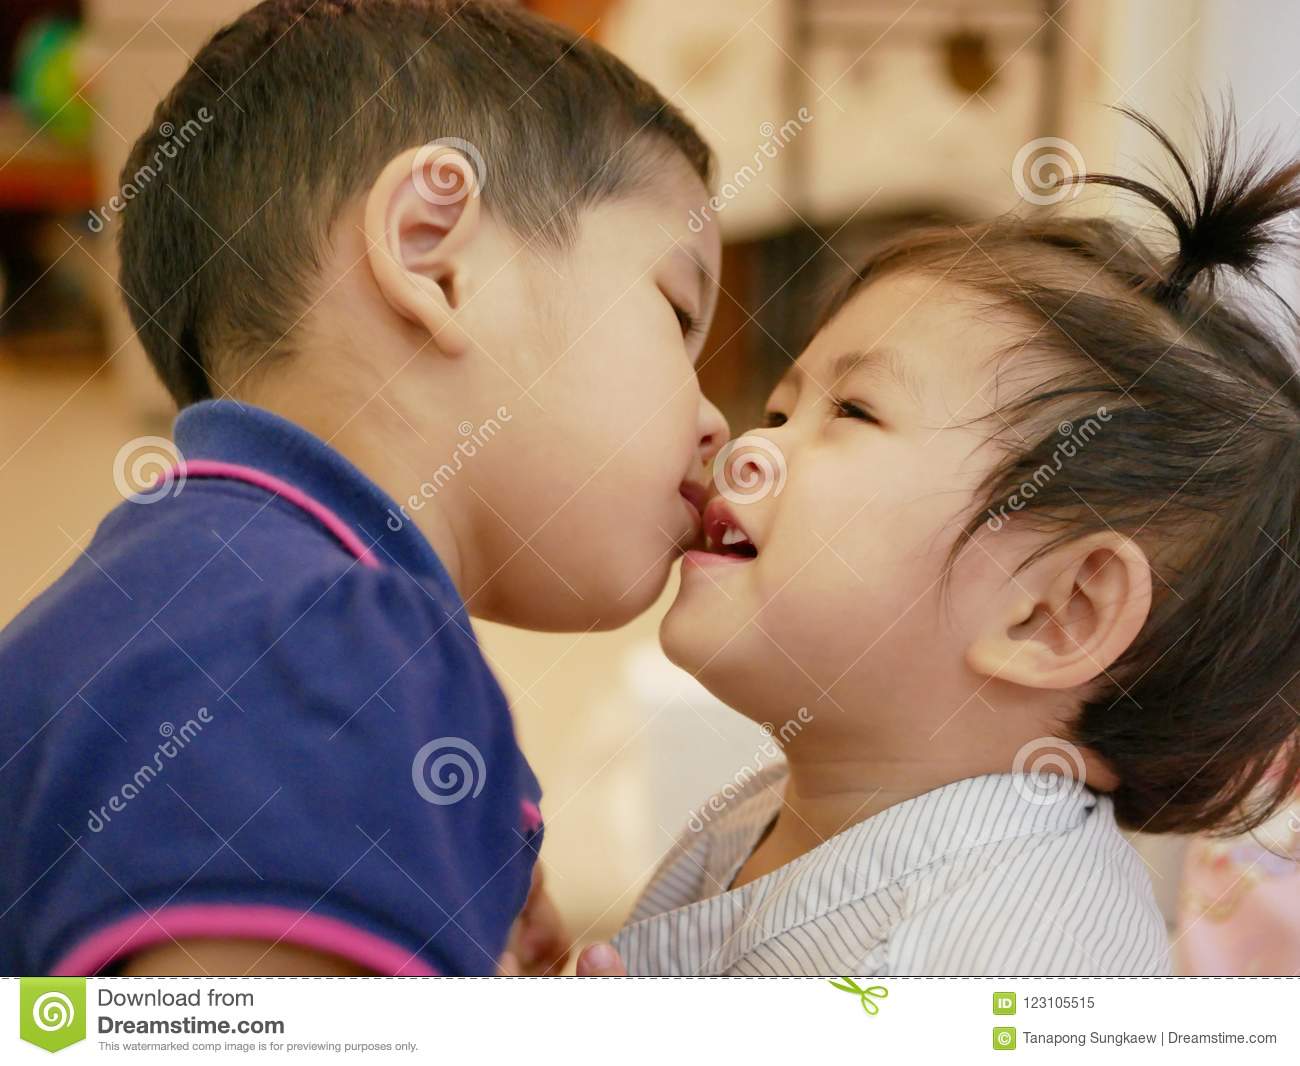 Asian girl kissing